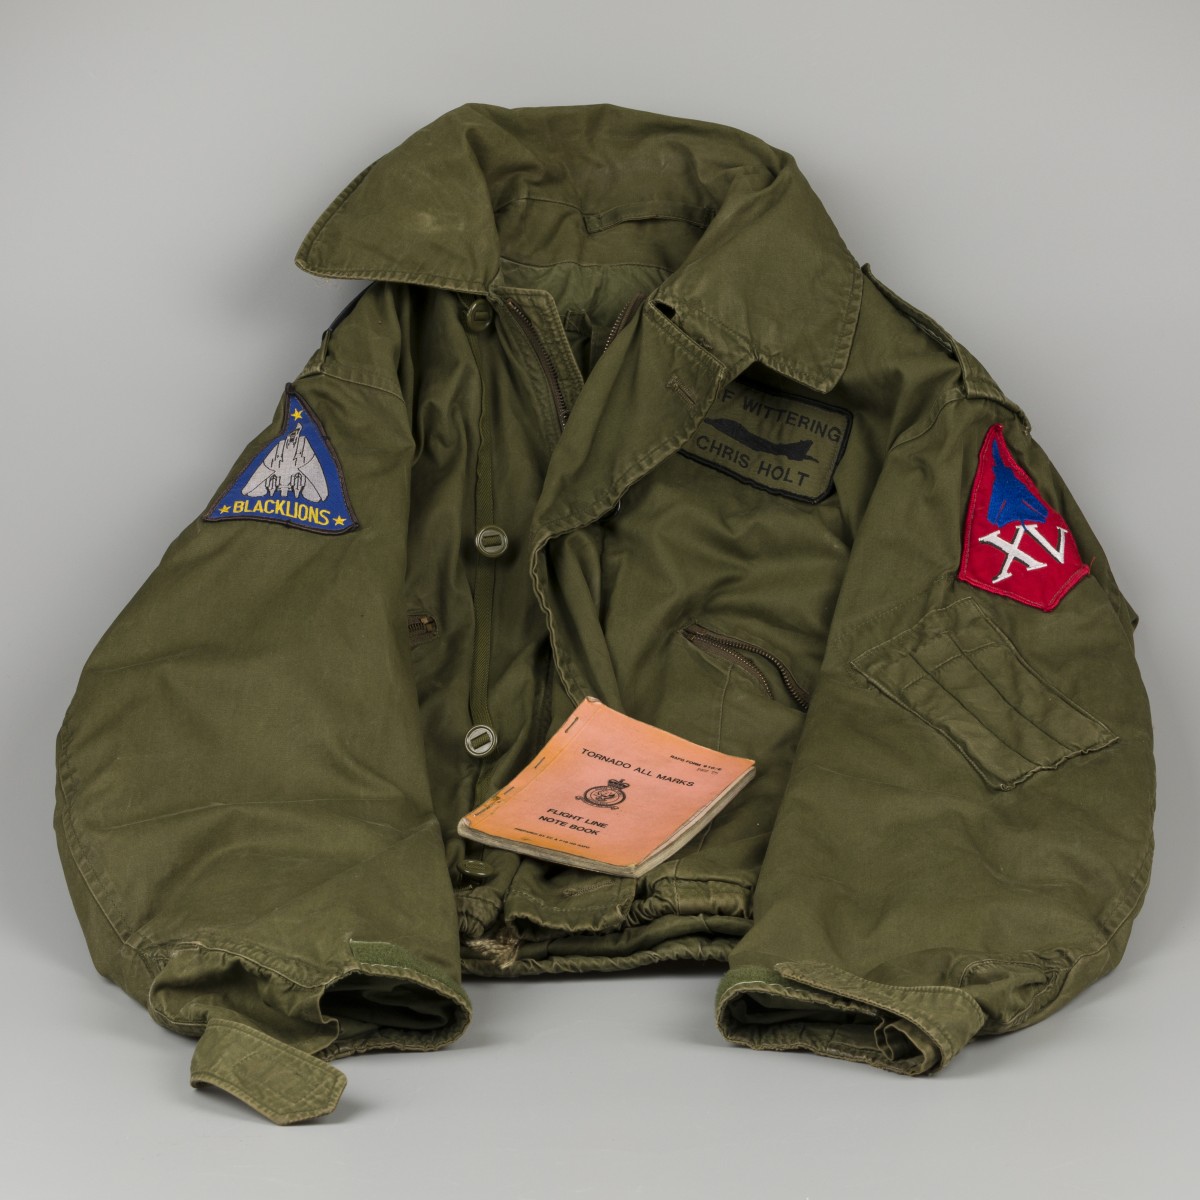 Een vliegeniersjas / bomber jacket, Black Lions, F14 Tomcat en flight line note book.